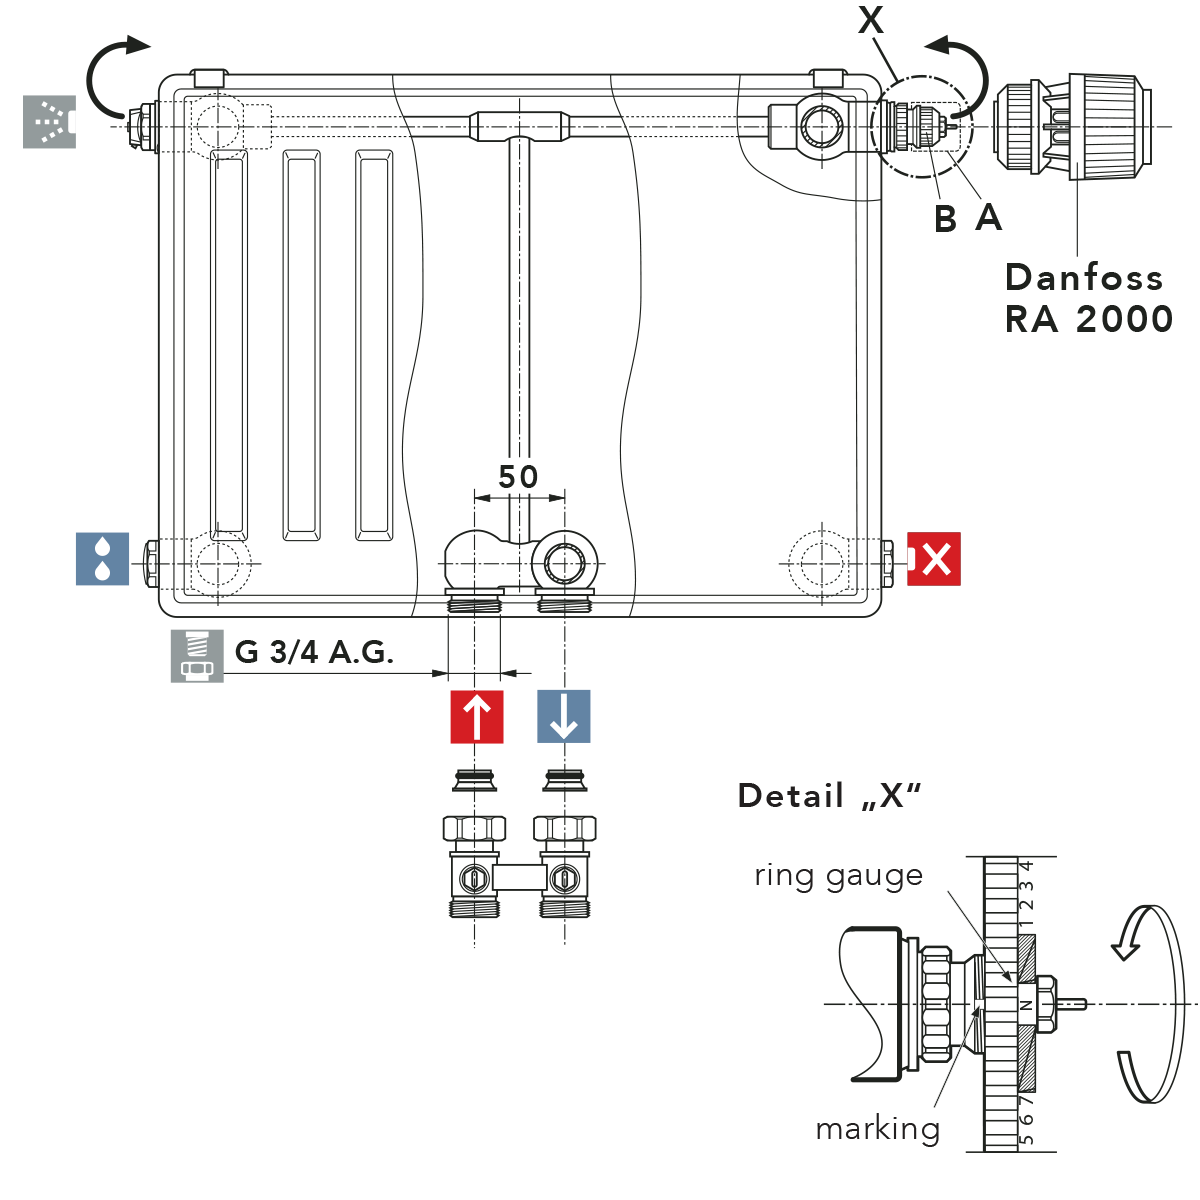 Racordare bitubulara - Modalitati de reglare pentru ventilul termostatic incorporat